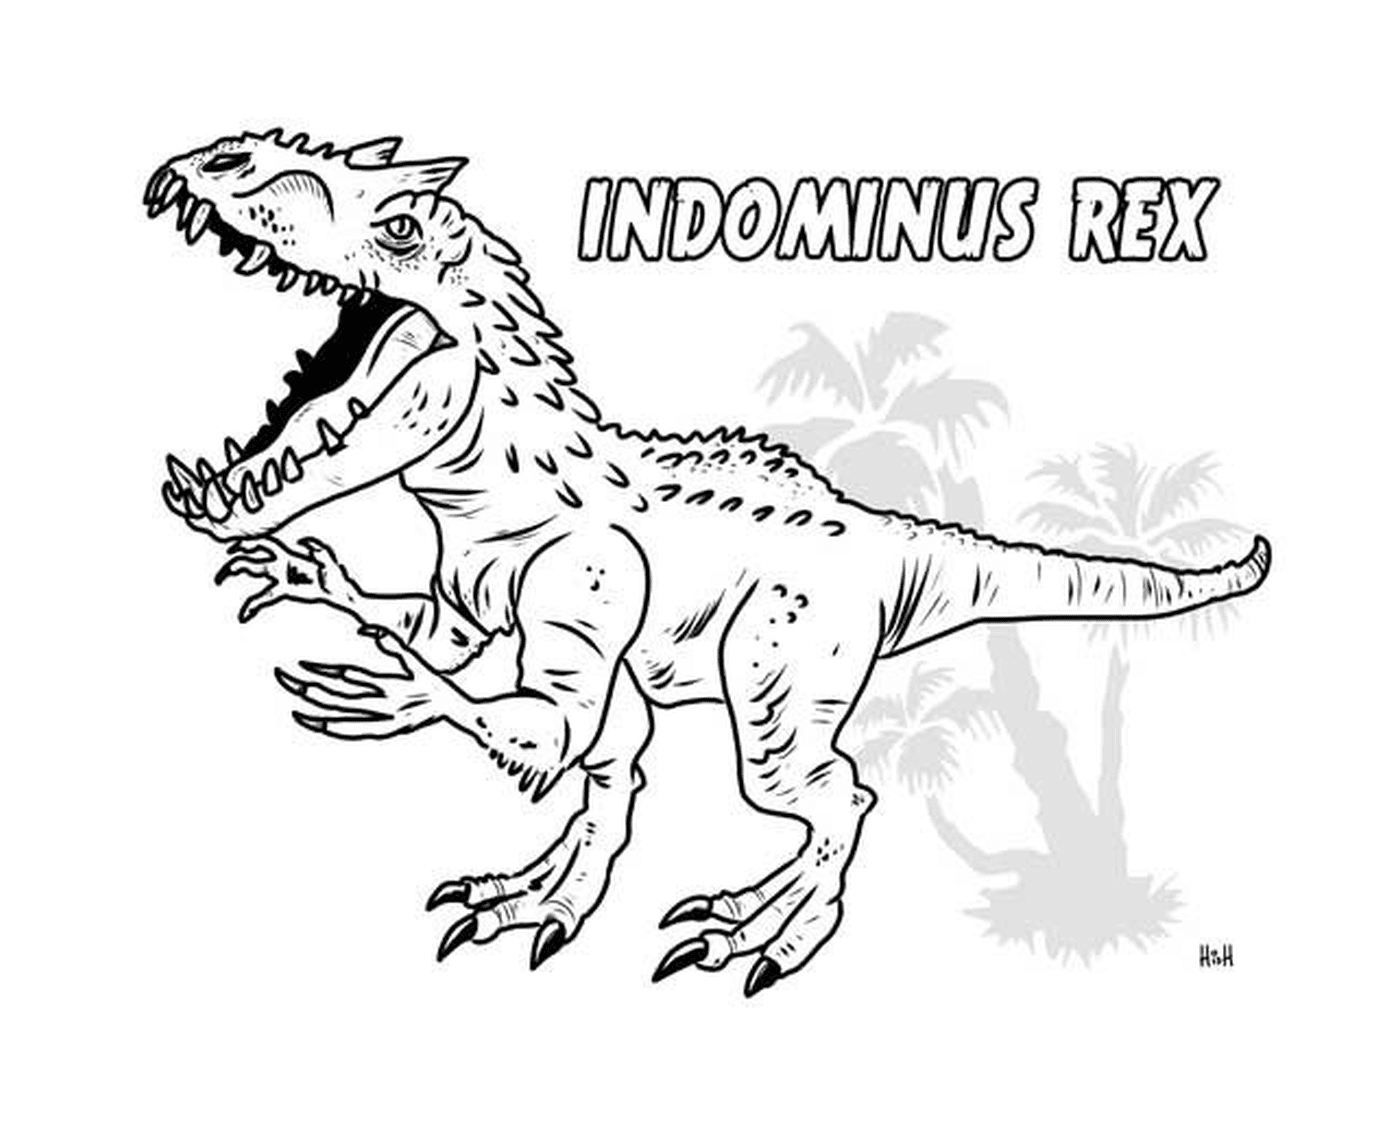  Indominus Rex, gefährliche jurassische Welt 